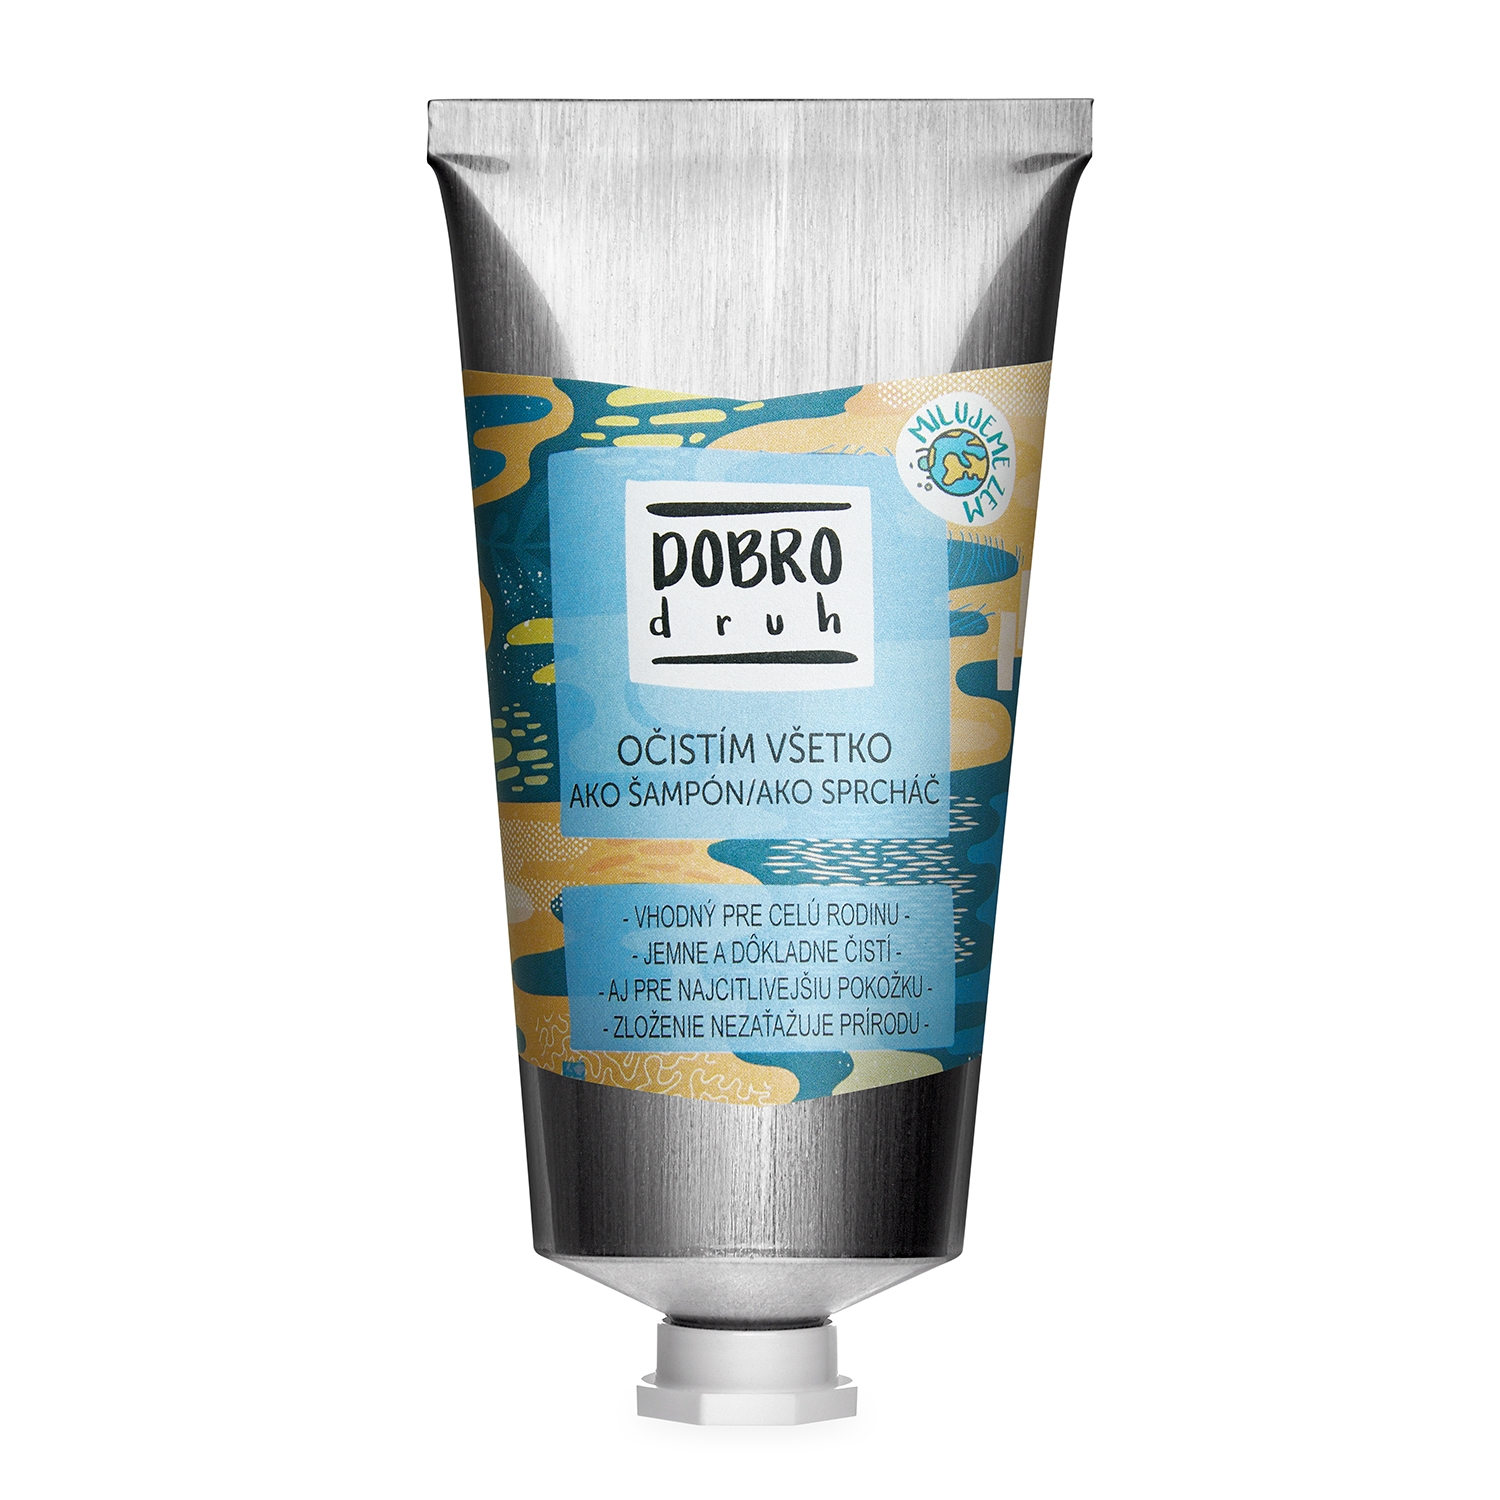 Levně SOAPHORIA DOBROdruh - šampon a sprcháč 2v1 75 ml